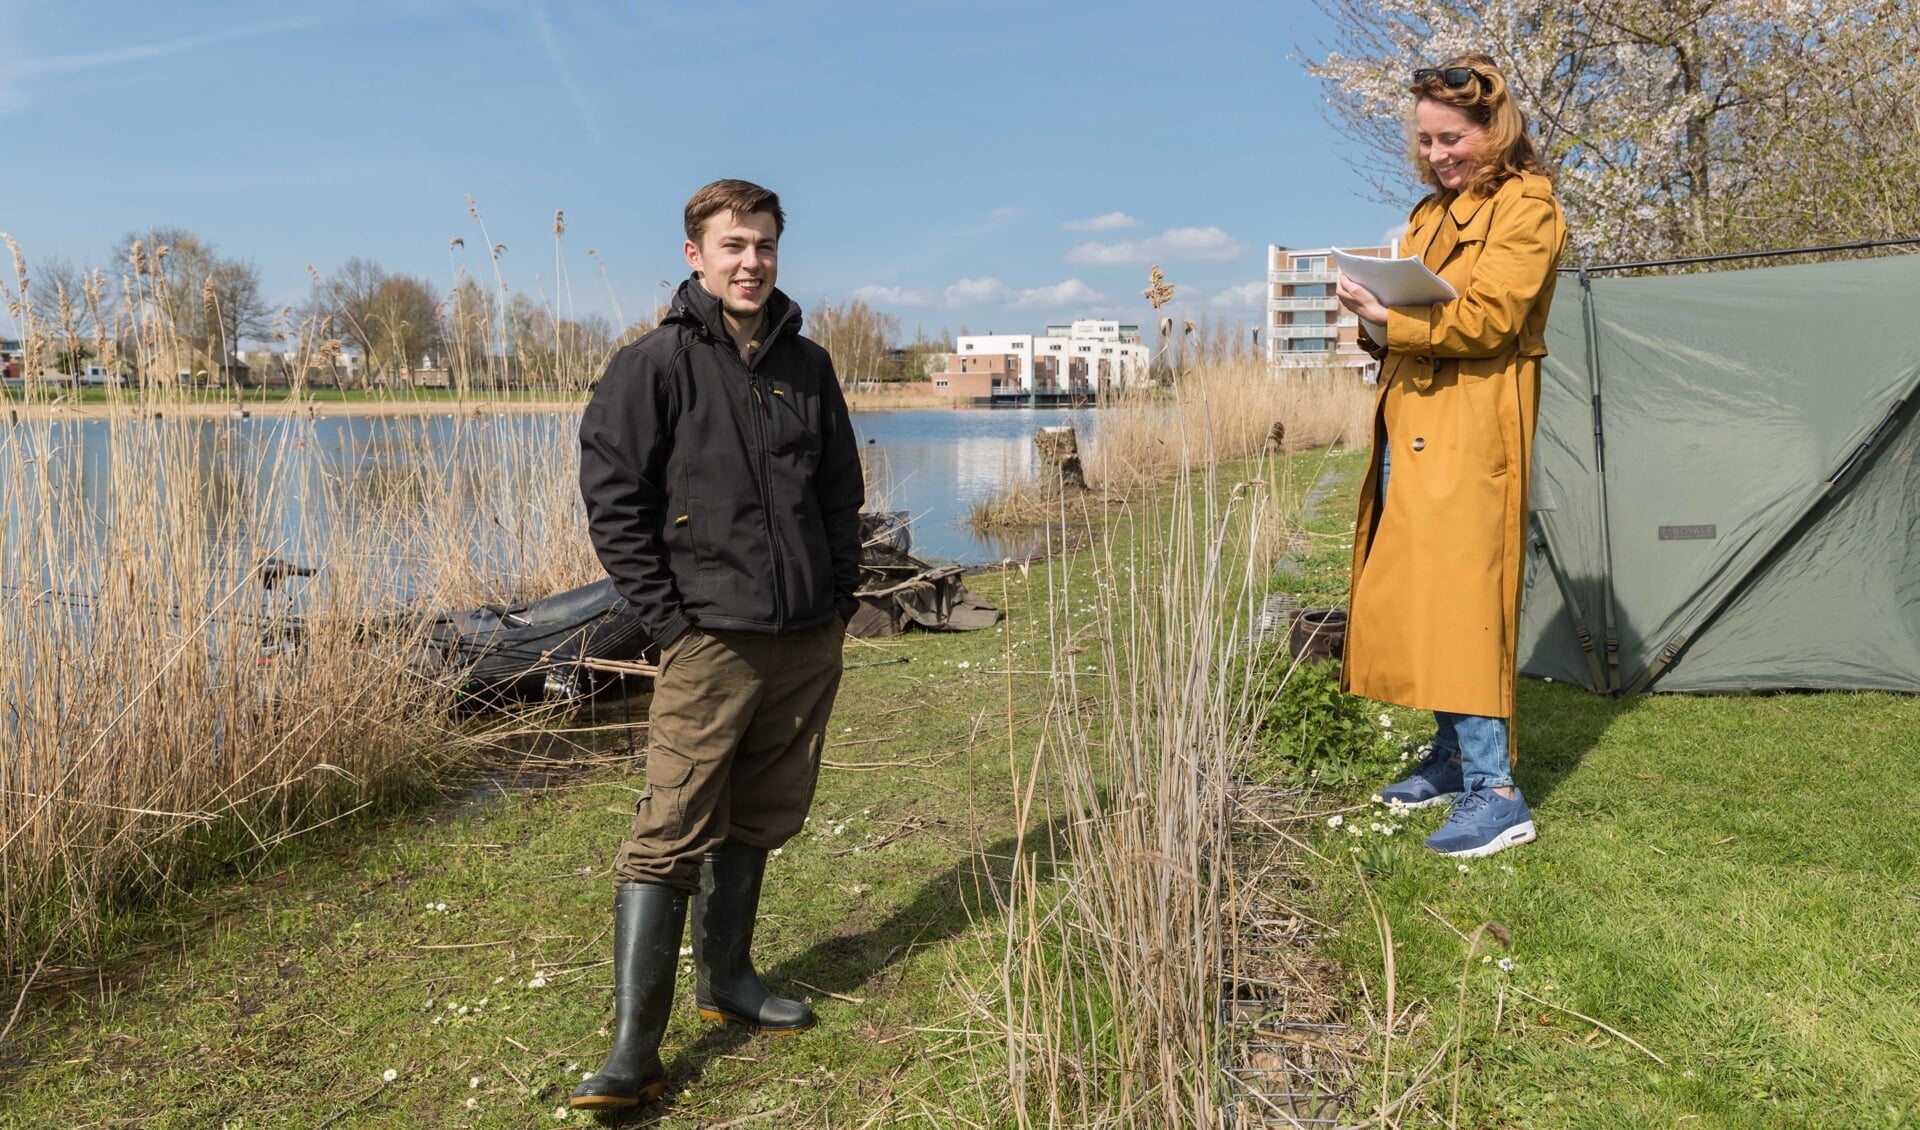 Jessica Dijkman interviewt trotse visser Calvin van Steenderen die alles weet over de zwemroutes van de vissen in de Rietplas.